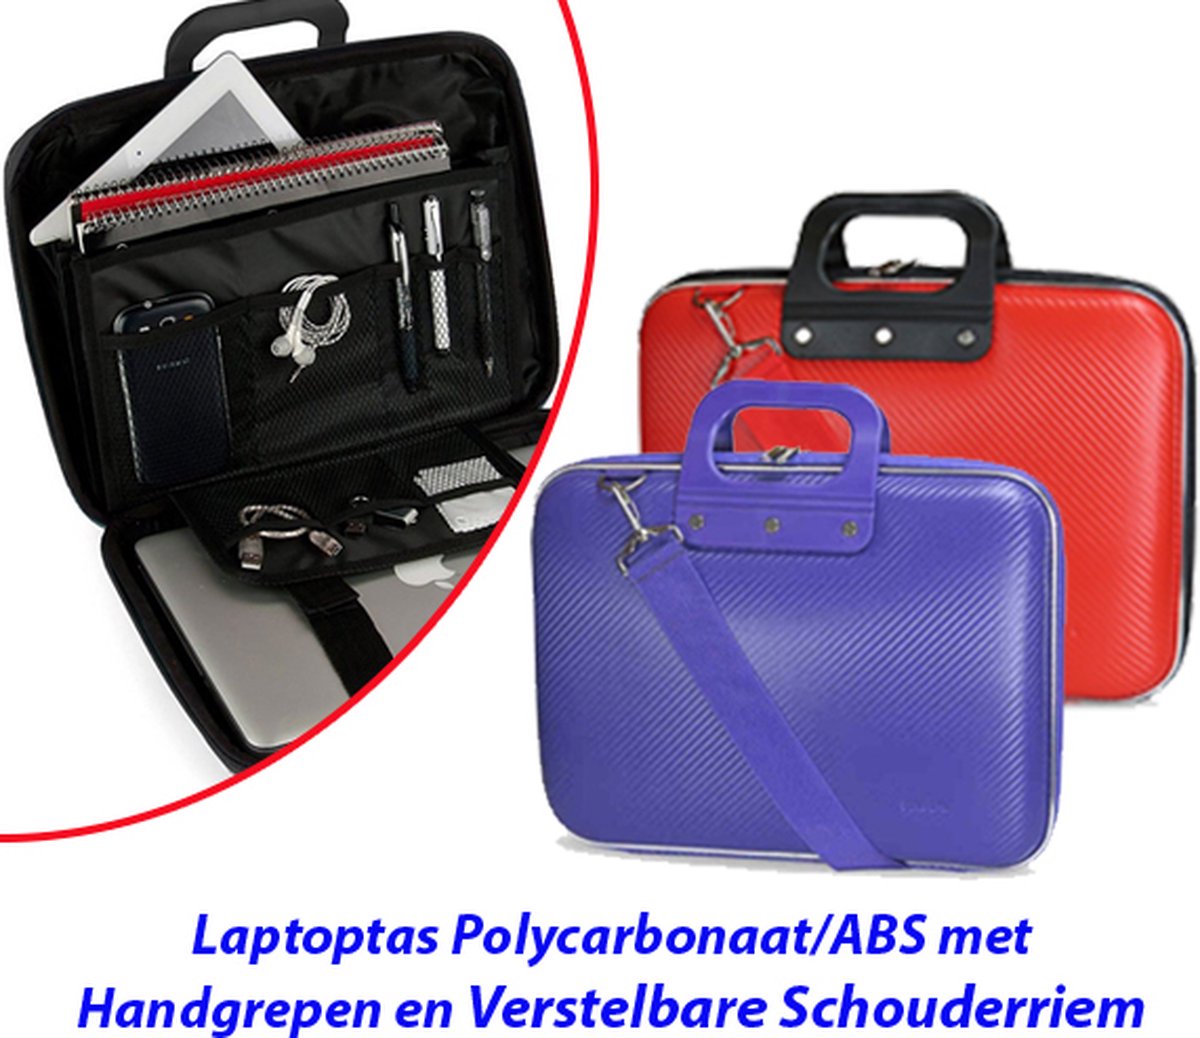 Laptoptas Polycarbonaat/ABS met Handgrepen en Verstelbare Schouderriem in Rood